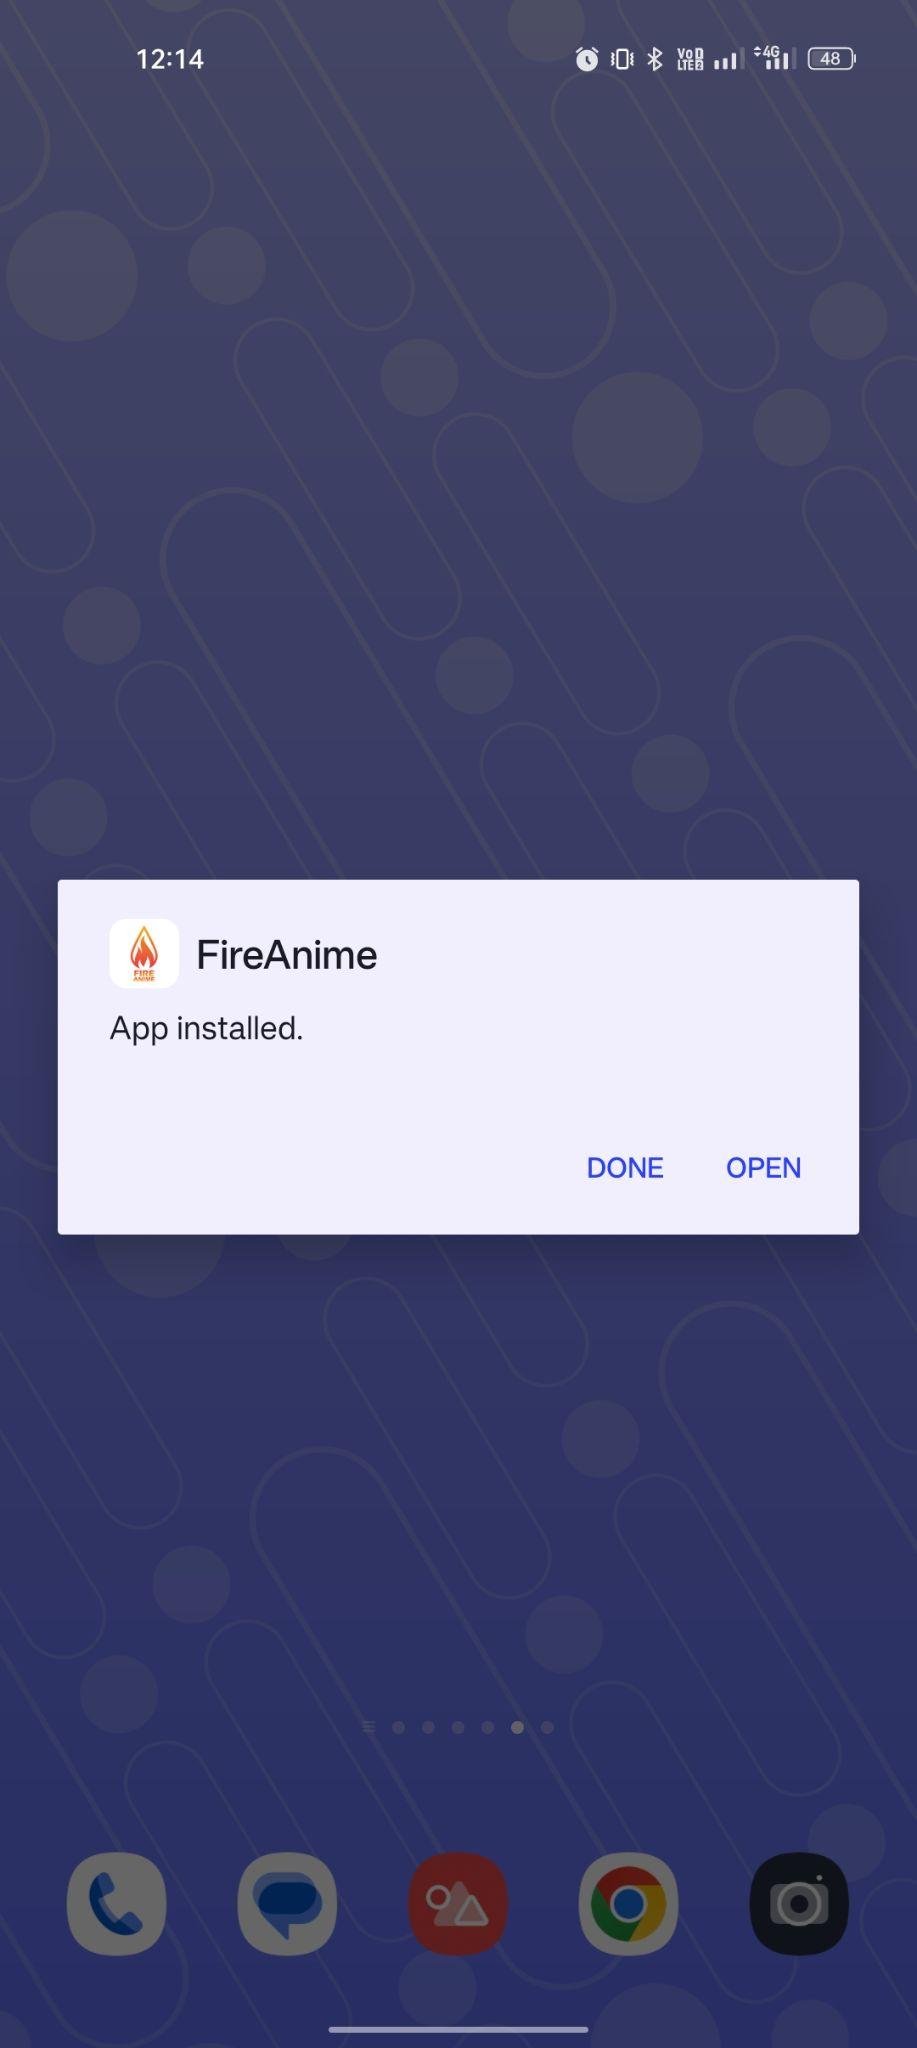 FireAnime apk installed